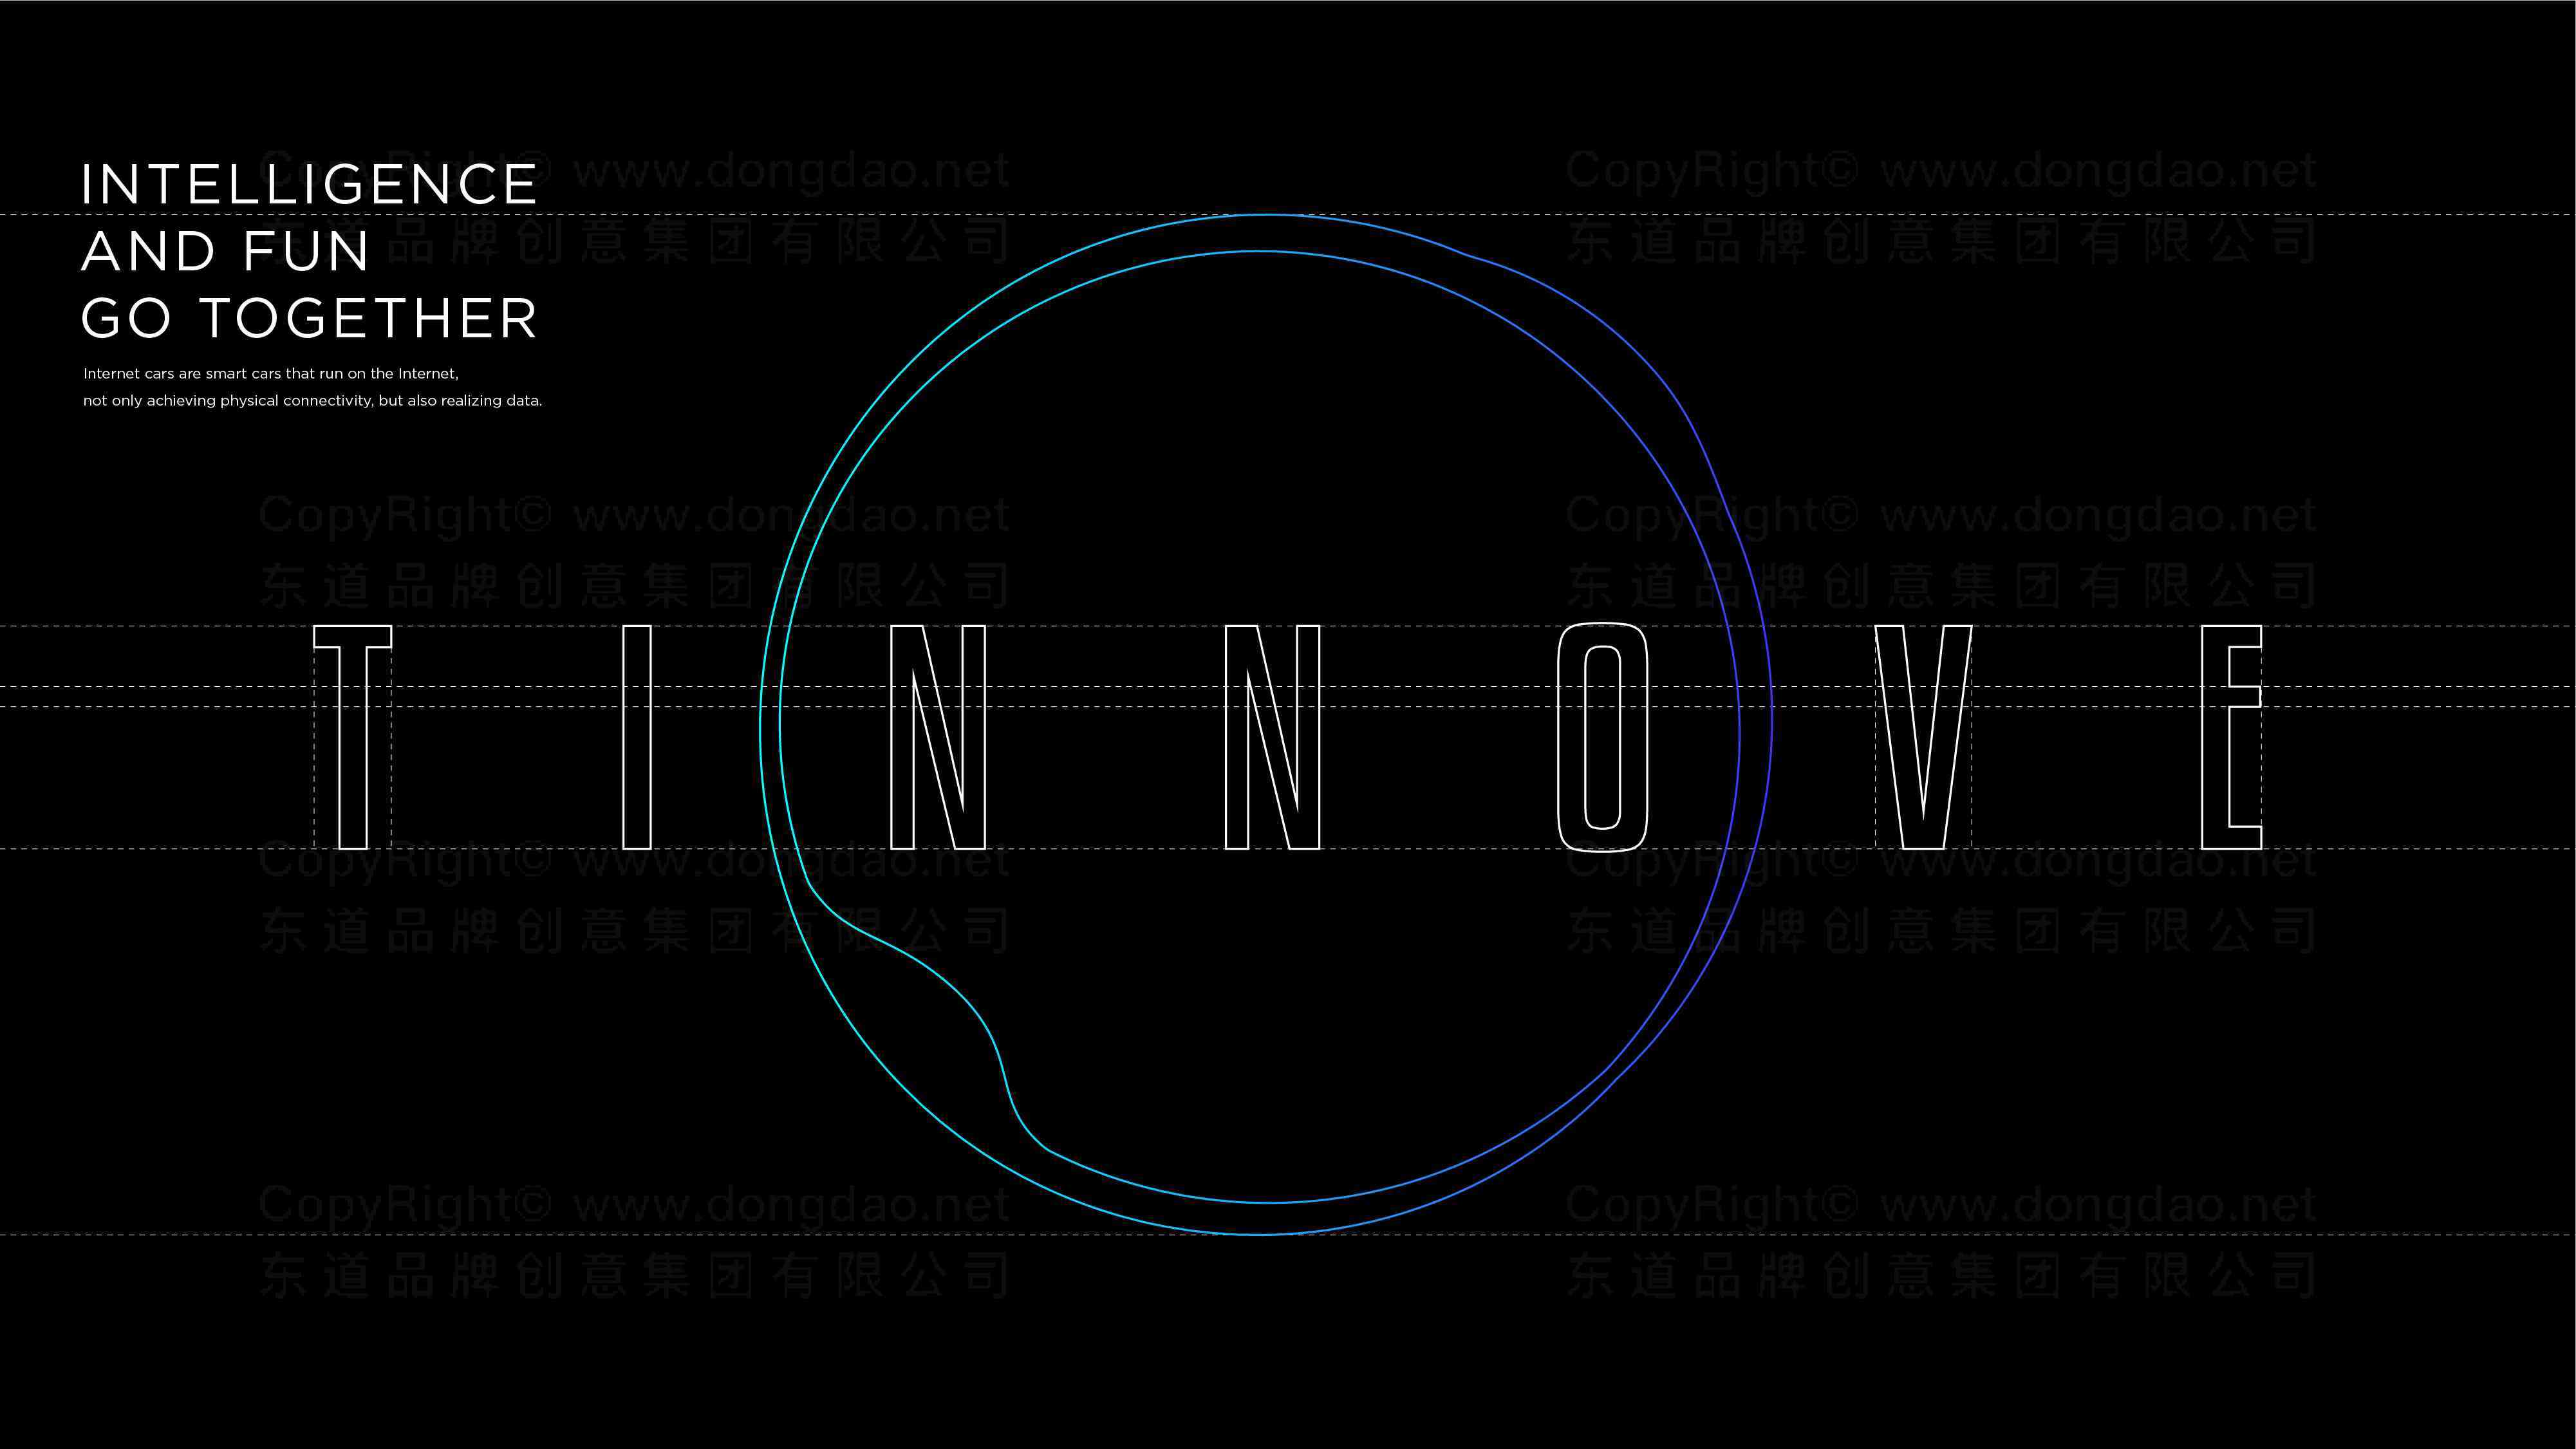 TINNOVE汽车智能系统汽车行业logo设计图片素材